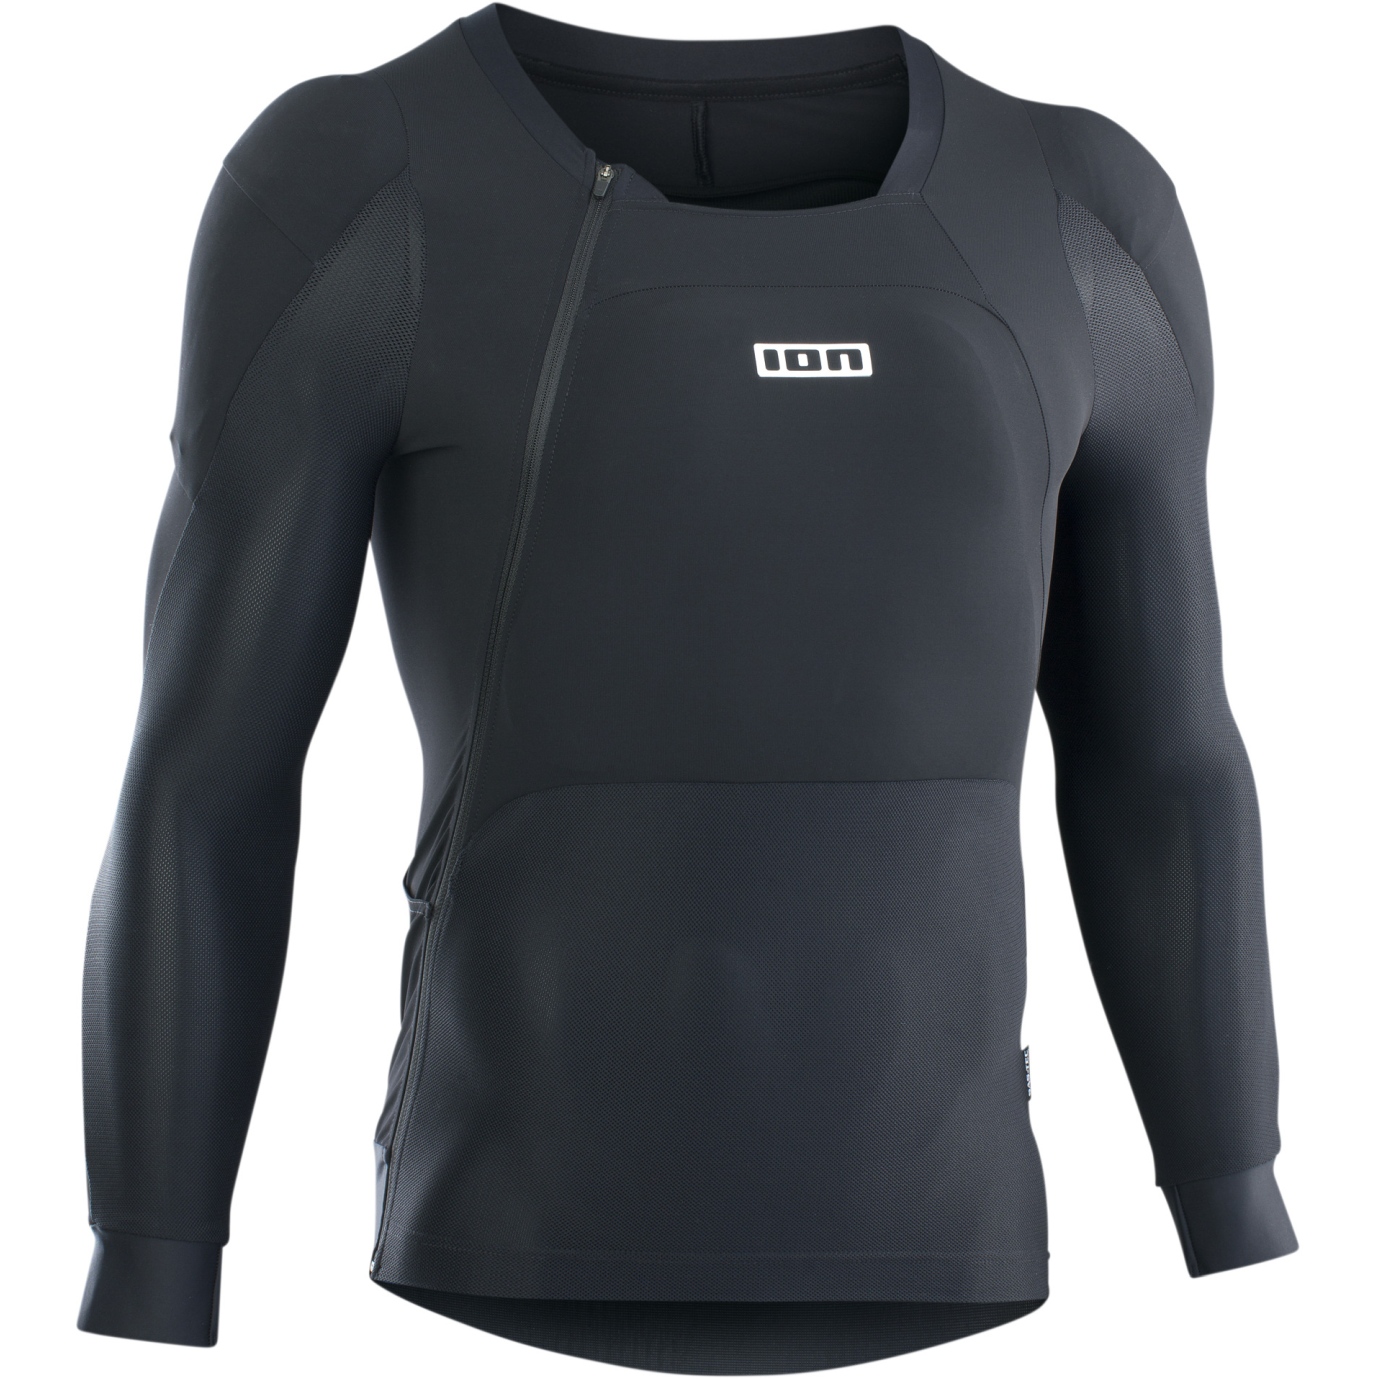 Productfoto van ION Bike Protection Wear Protector Shirt met Lange Mouwen AMP - Zwart